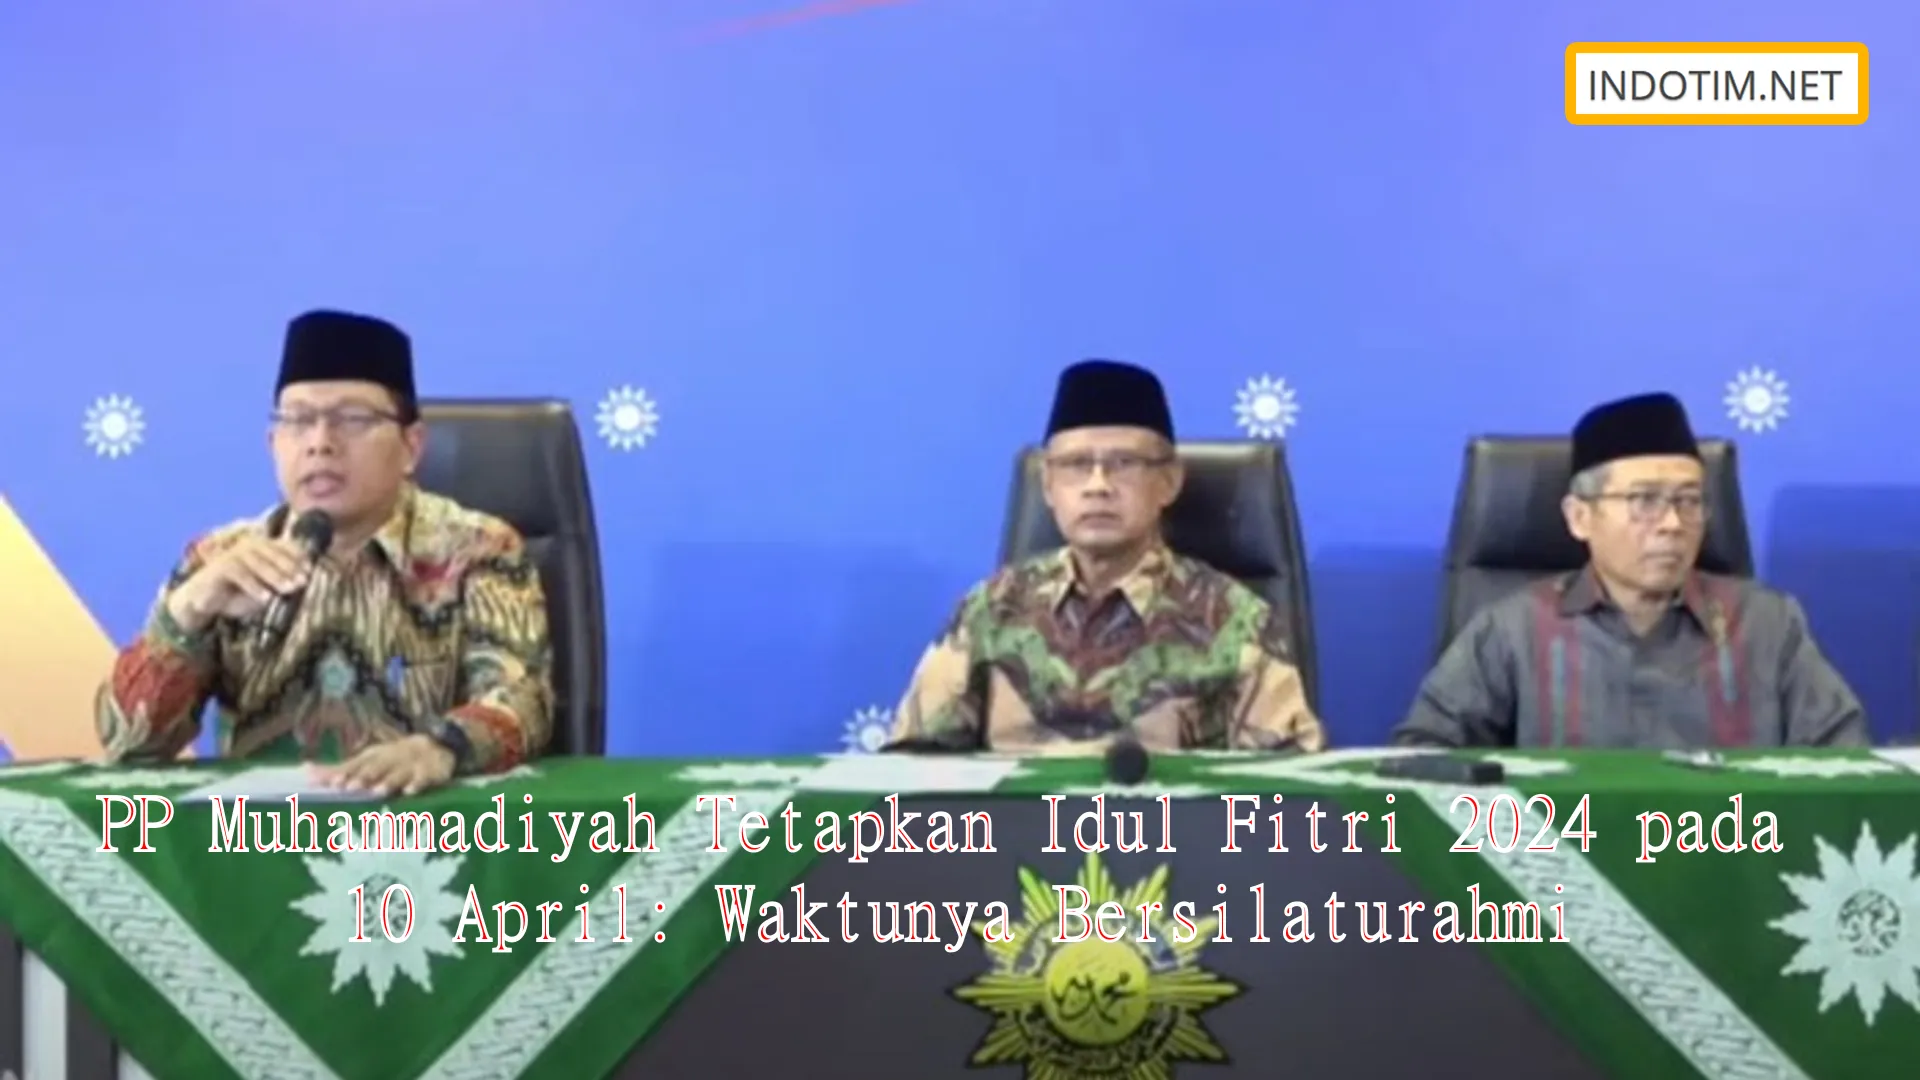 PP Muhammadiyah Tetapkan Idul Fitri 2024 pada 10 April: Waktunya Bersilaturahmi